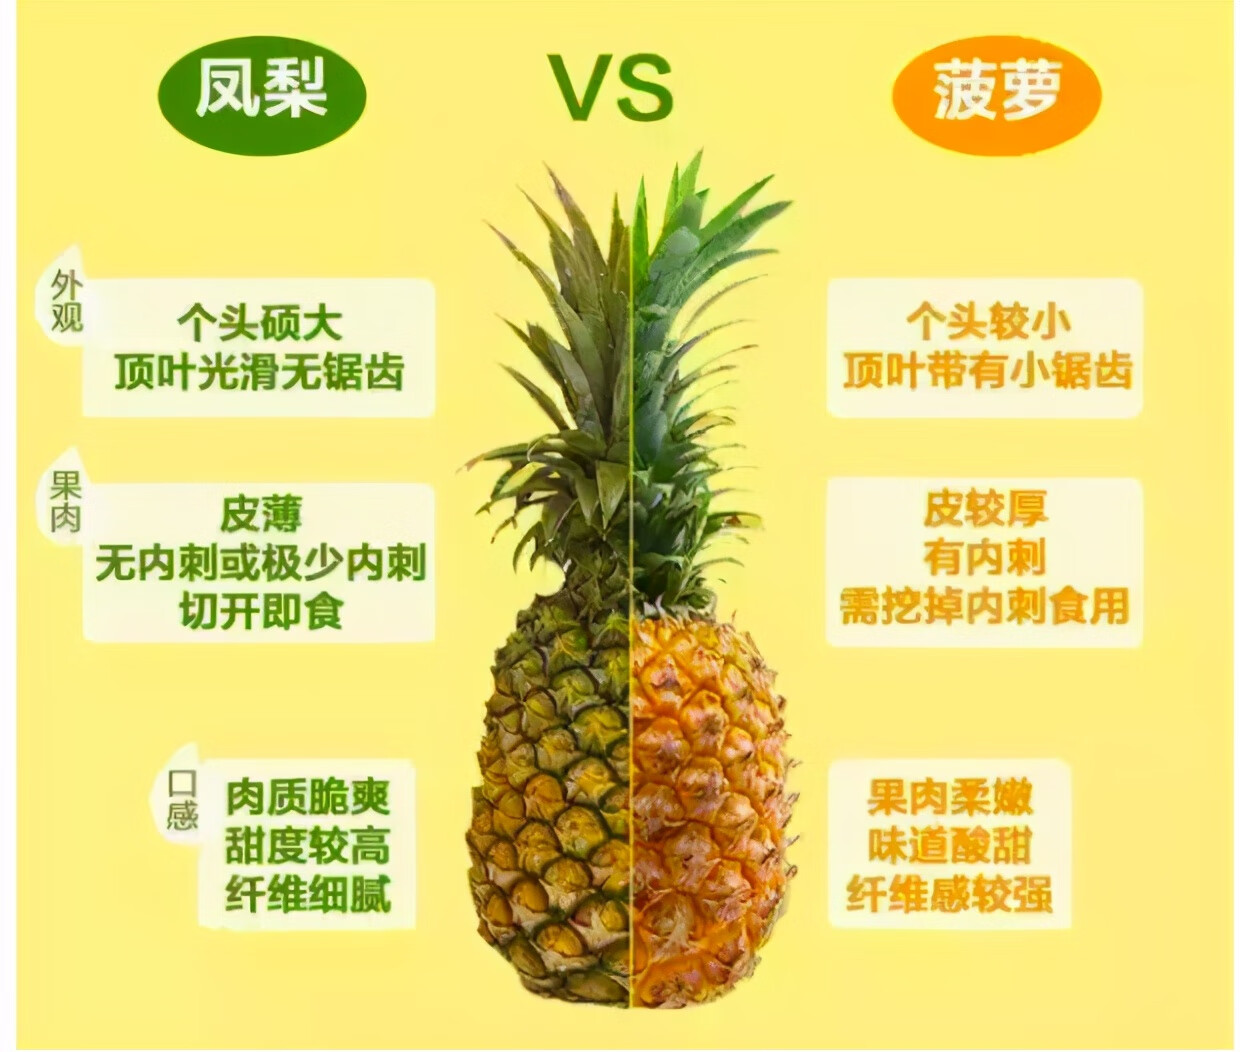 菠萝和凤梨是同一个物种吗(玻璃菠萝和凤梨)